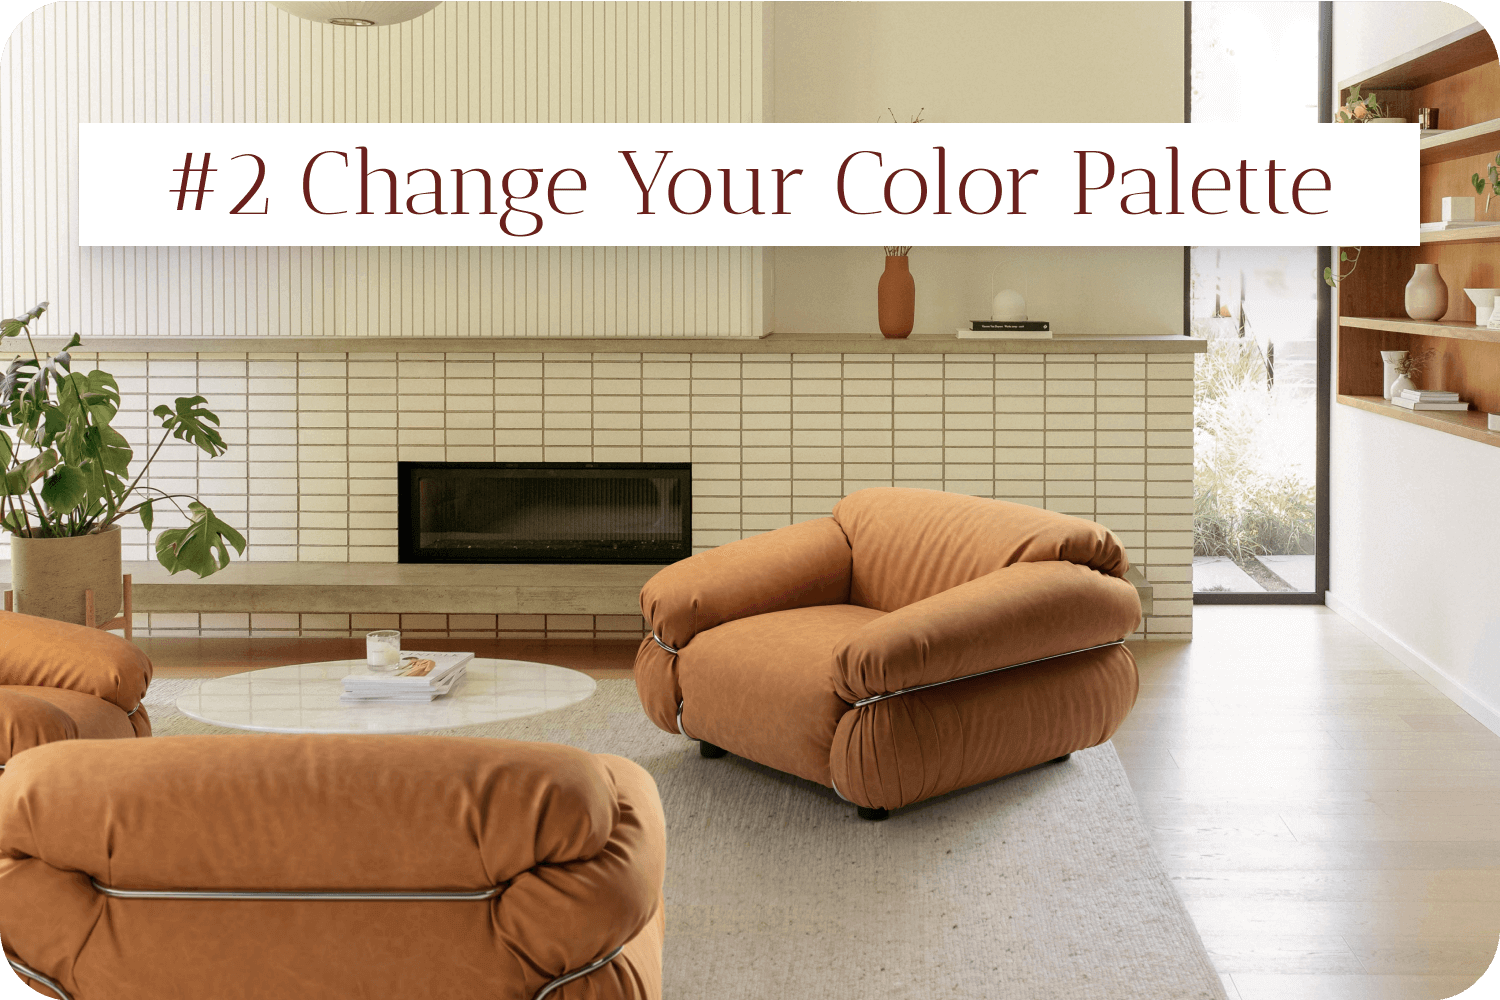 #2 Change Your Color Palette